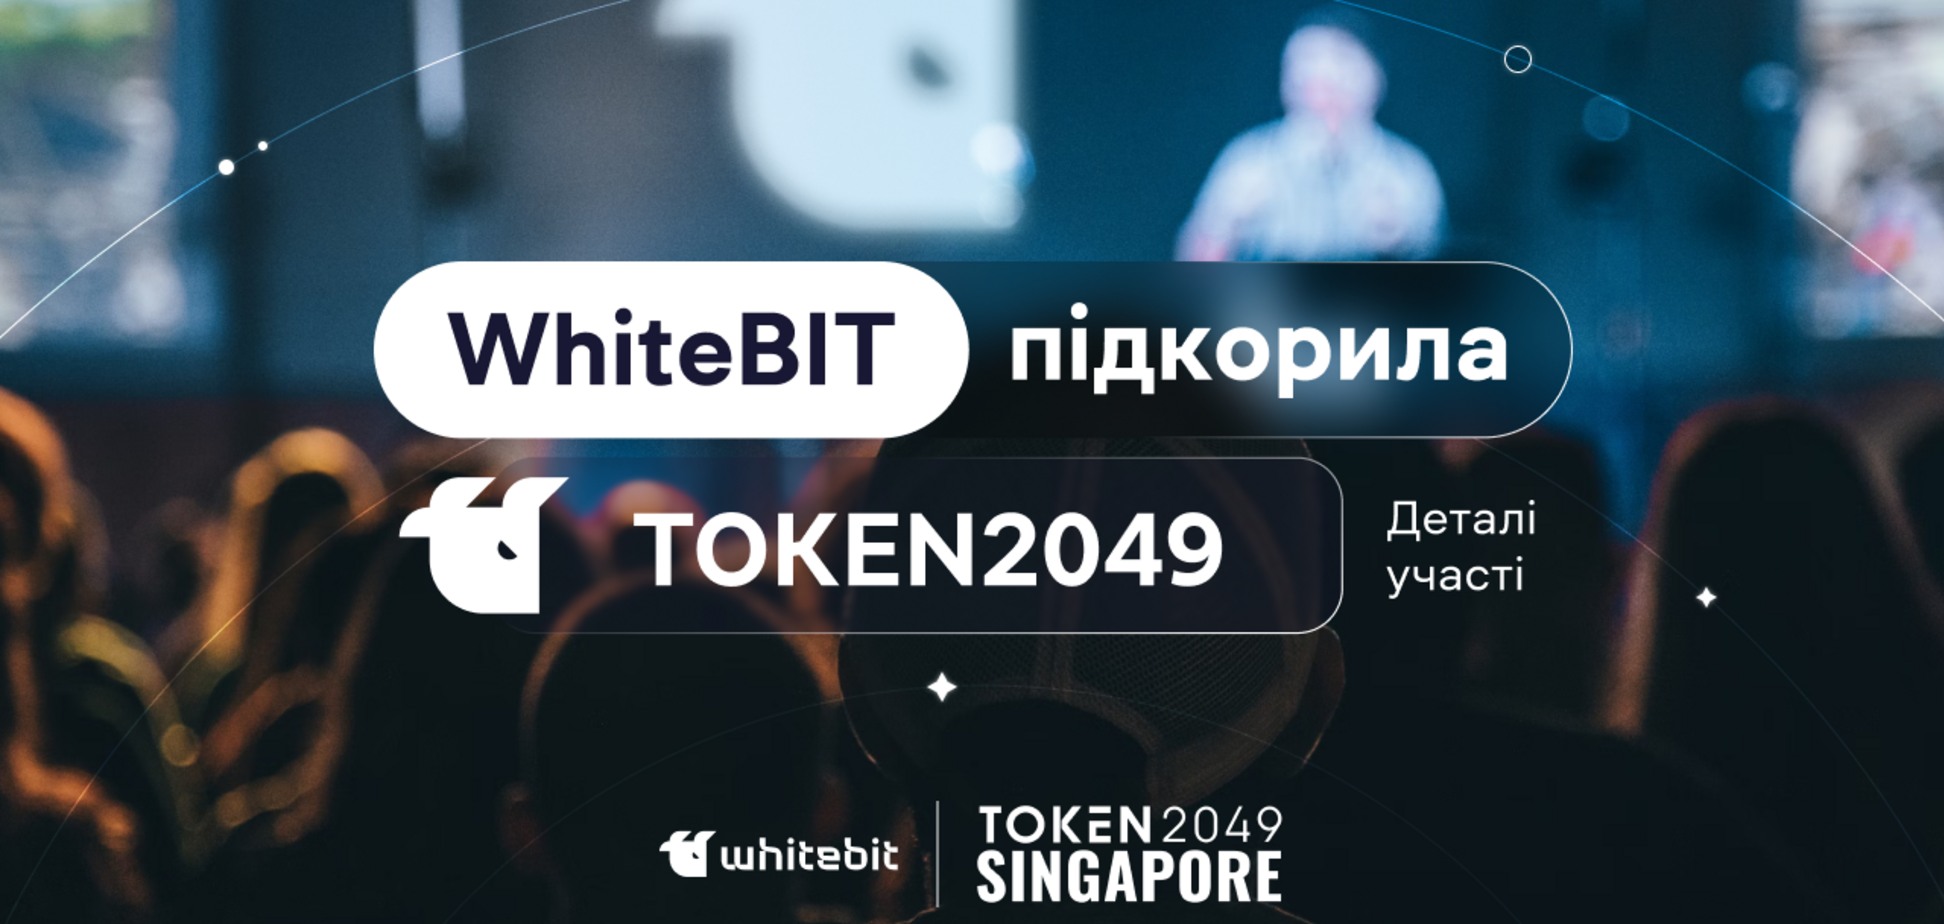 WhiteBIT стала единственной криптокомпанией родом из Украины, которая участвовала и была партнером TOKEN2049